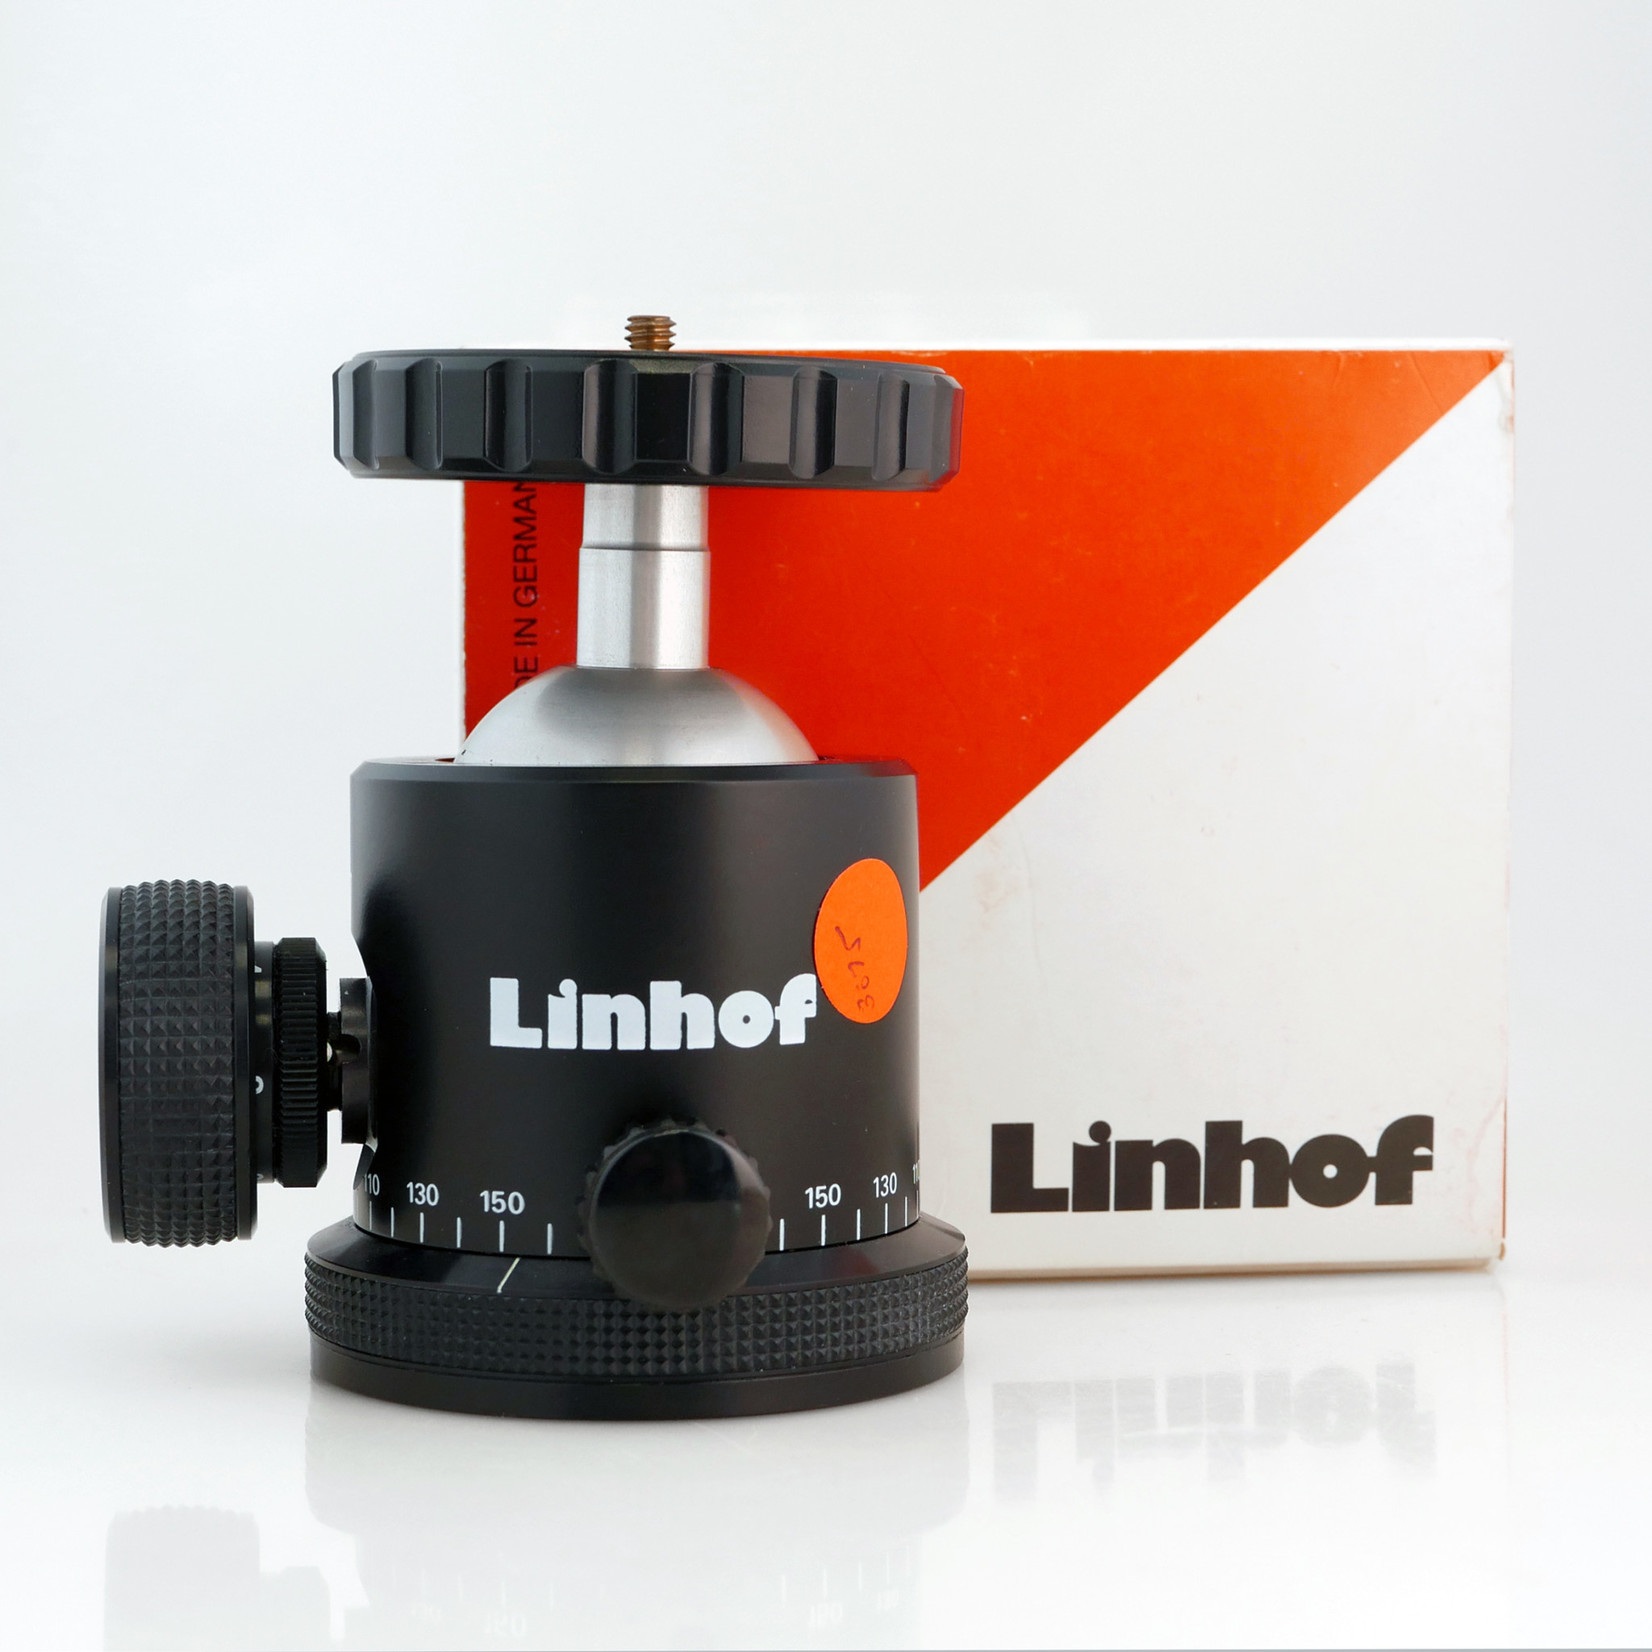 Linhof Linhof PROFI-III Ballhead (Used)